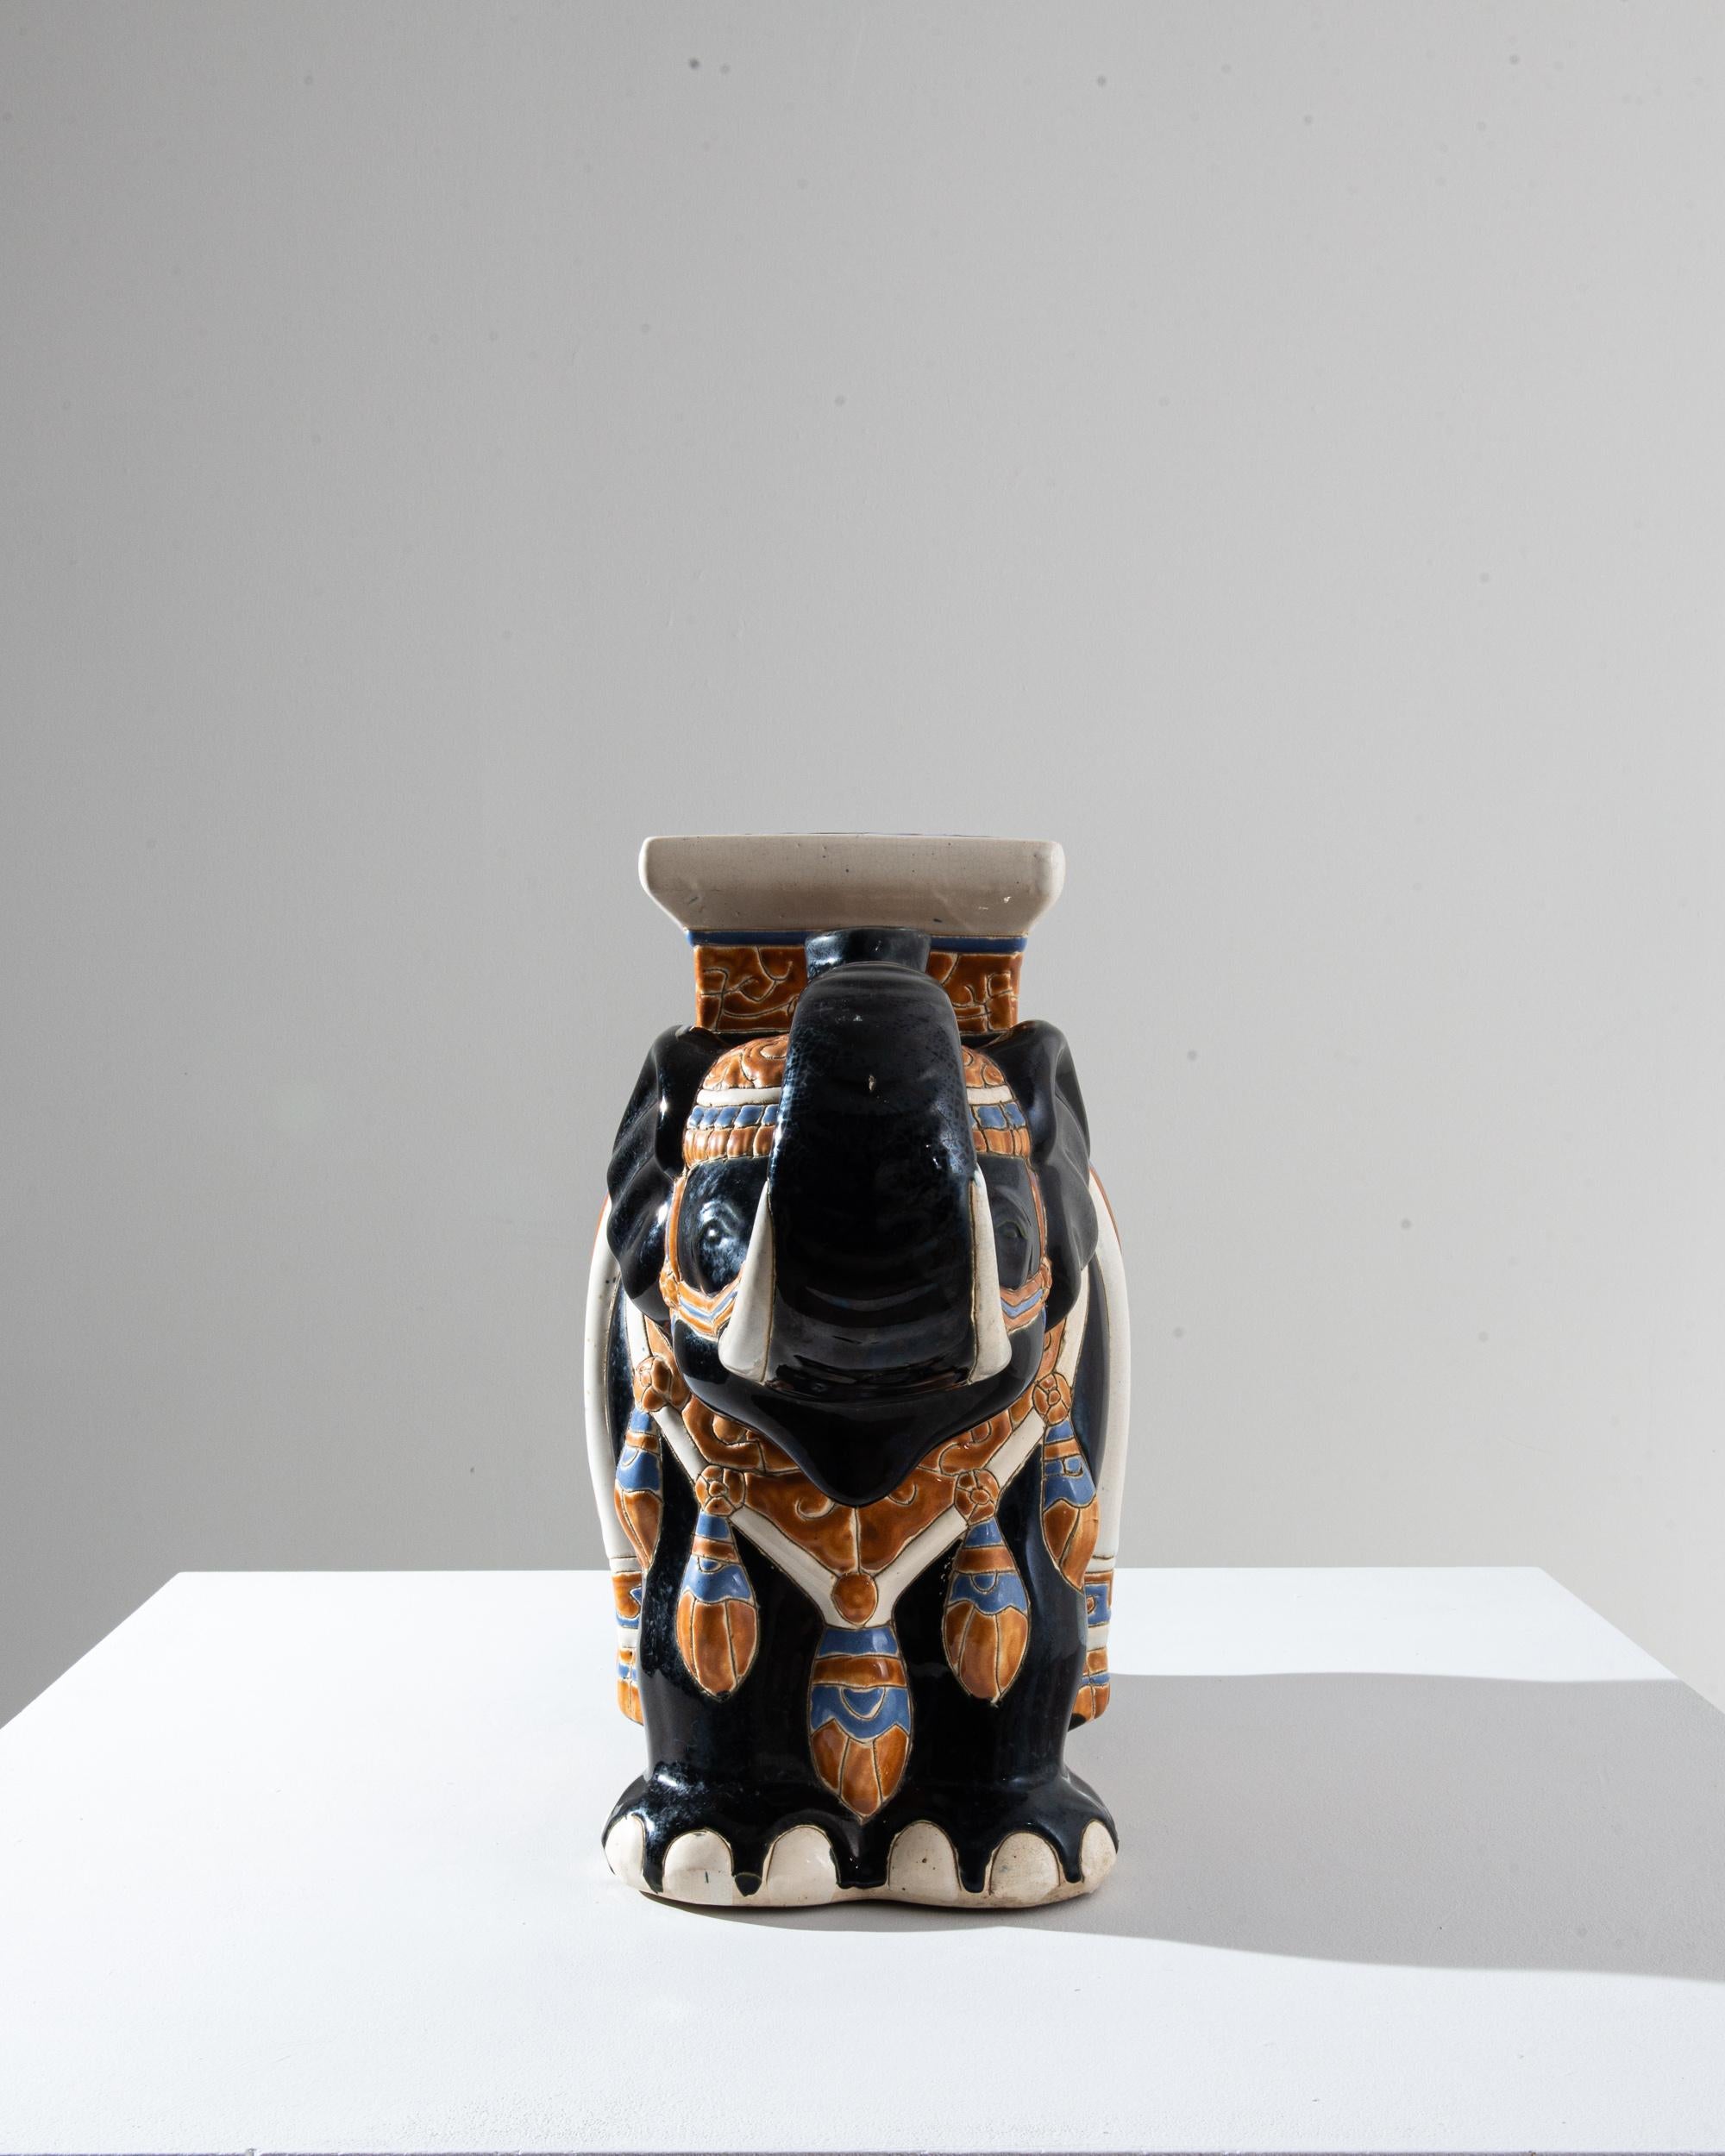 Décoration en céramique des années 1960 en France en forme d'éléphant. La selle, le siège et la couverture sont délicatement ornés de motifs reflétant les influences chinoises et arabes et évoquant le romantisme de la route de la soie. L'éléphant se